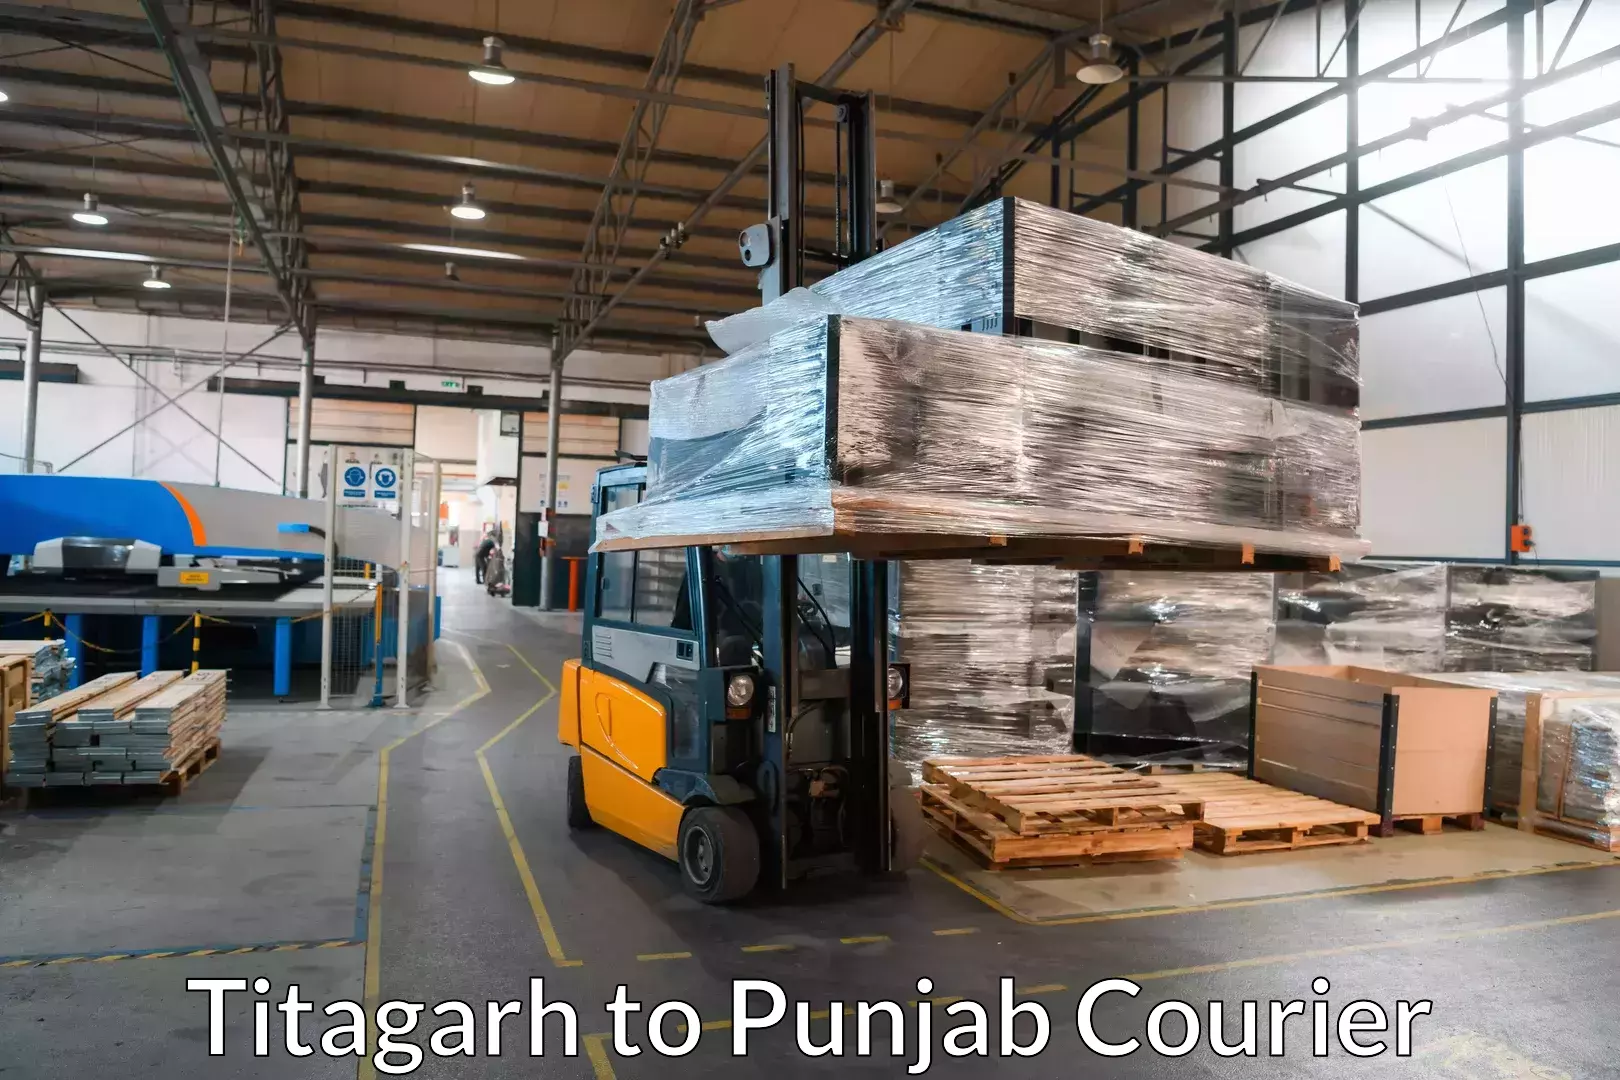 Furniture transport experts Titagarh to Punjab